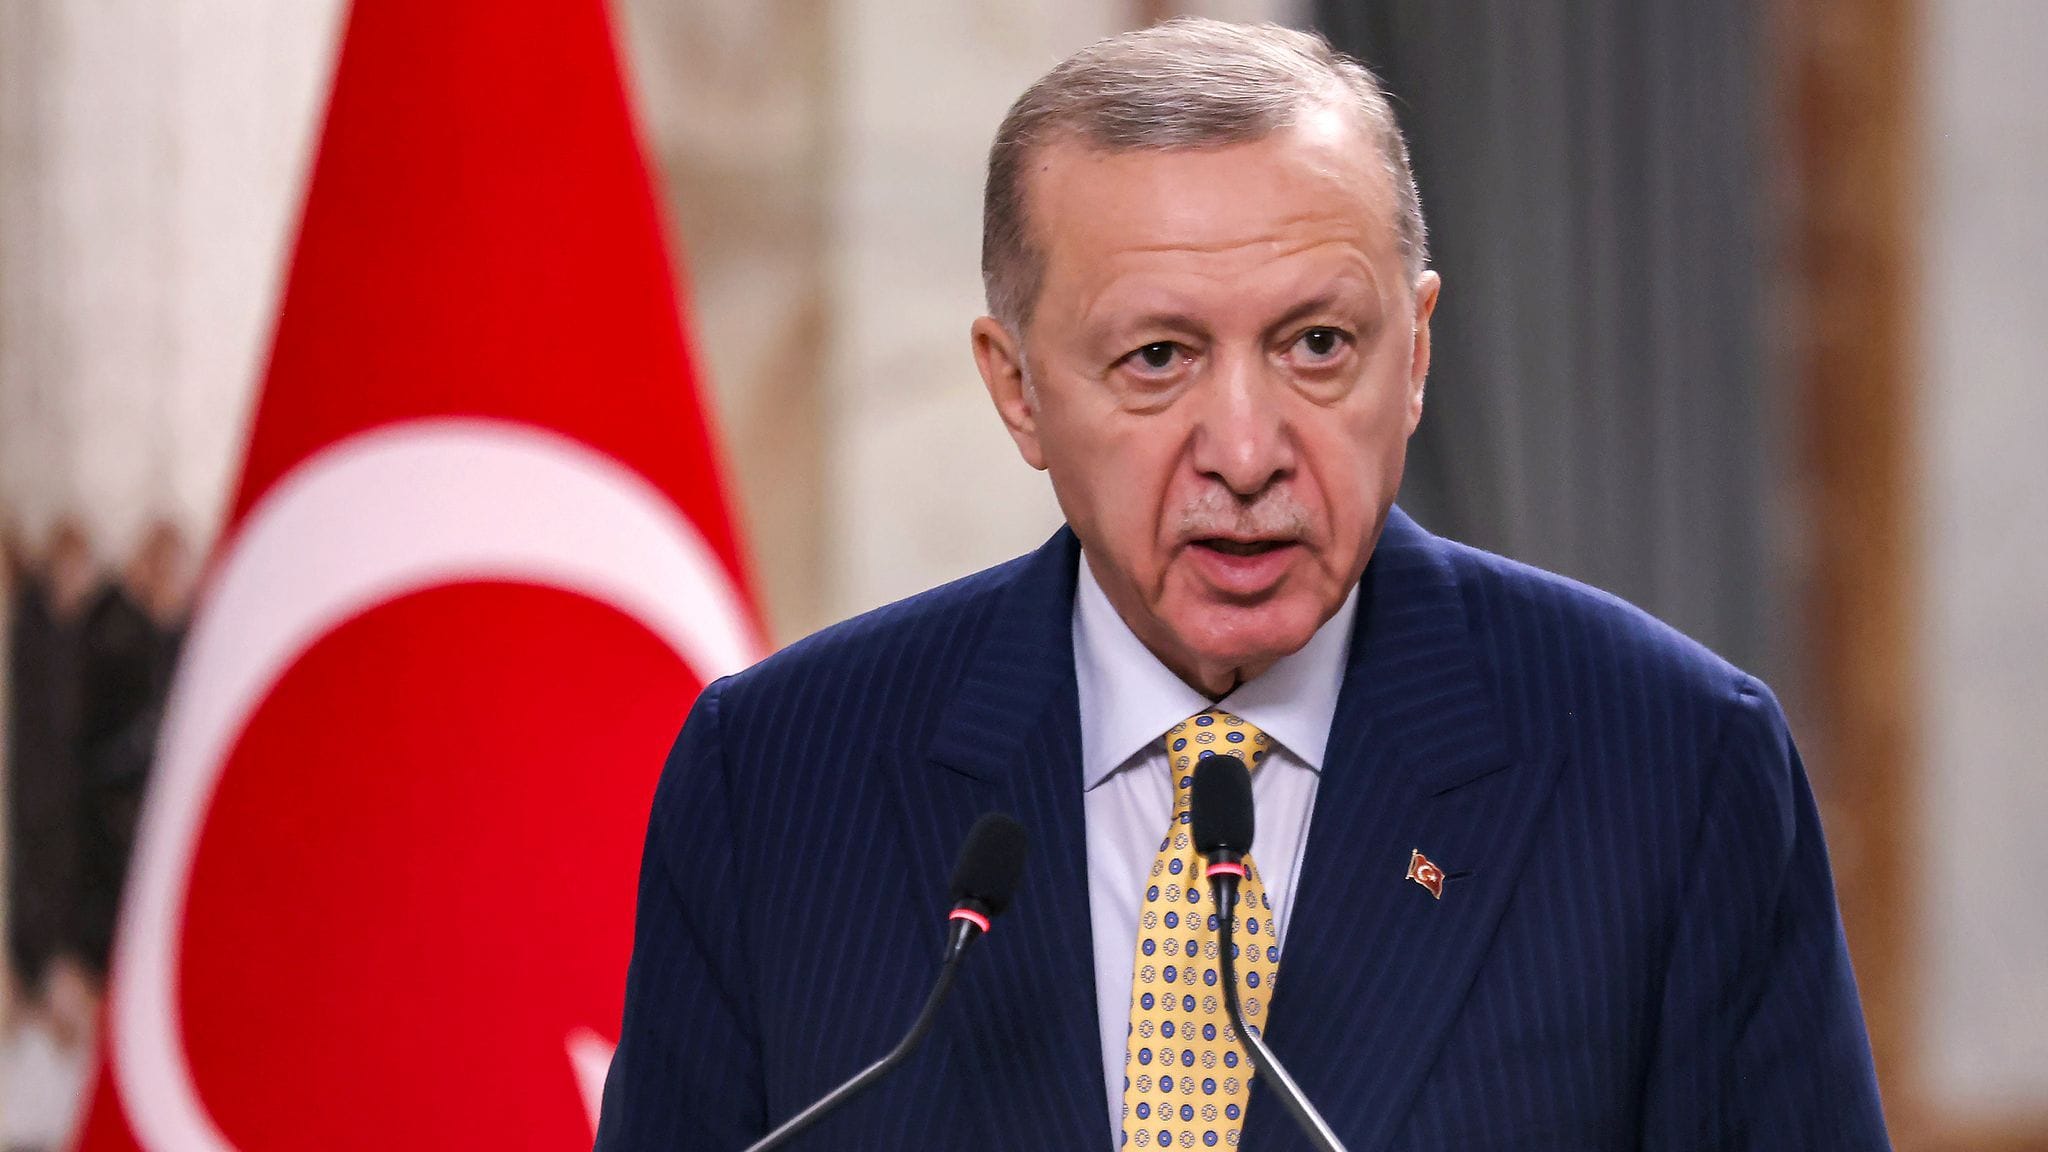 Türkei plant Gesetz gegen 